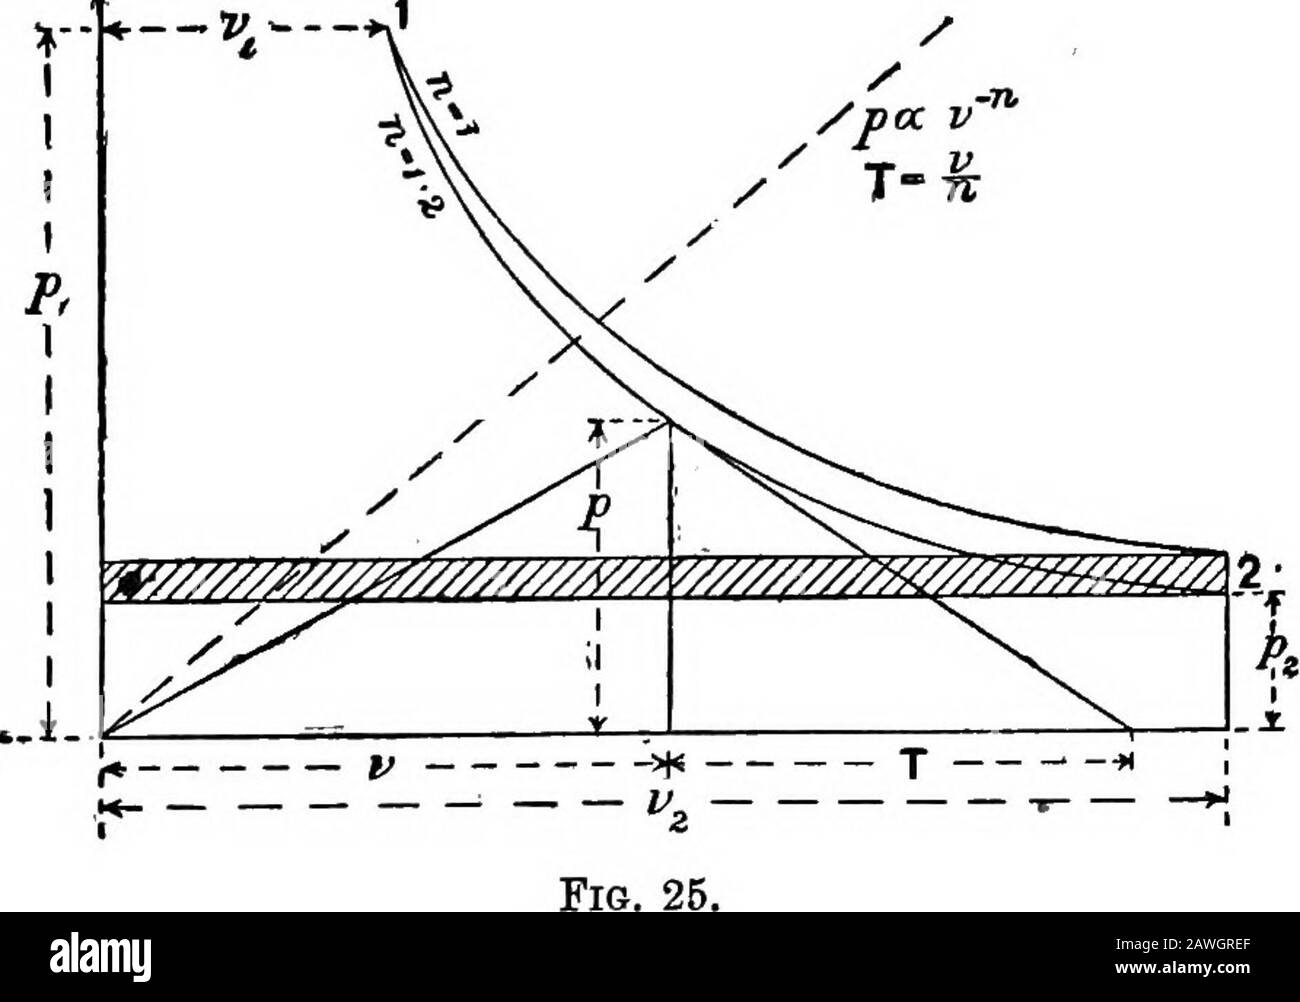 Il calcolo per ingegneri e fisici : integrazione e differenziazione, con applicazioni a problemi tecnici e tabelle di riferimento classificate di integrali e metodi di integrazione . -Il rapporto tra pressione media e pressione iniziale è quindi 2^ = ^i{l + 2-31og,„^4- 111. Costruzione grafica per diagrammi indicatori.-Tn fig.25 la curva superiore è un'iperbole comune o curva di ricambio, /DOC V. ed è il gas isotermico. Il più basso è disegnato nella formula:ap = 6t)-ii. Il prodotto pt) è lo stesso in tutti i punti della curva superiore e, quindi, in tutti i punti è uguale a ^jWj. Quindi per IL PARTICOLARE Foto Stock